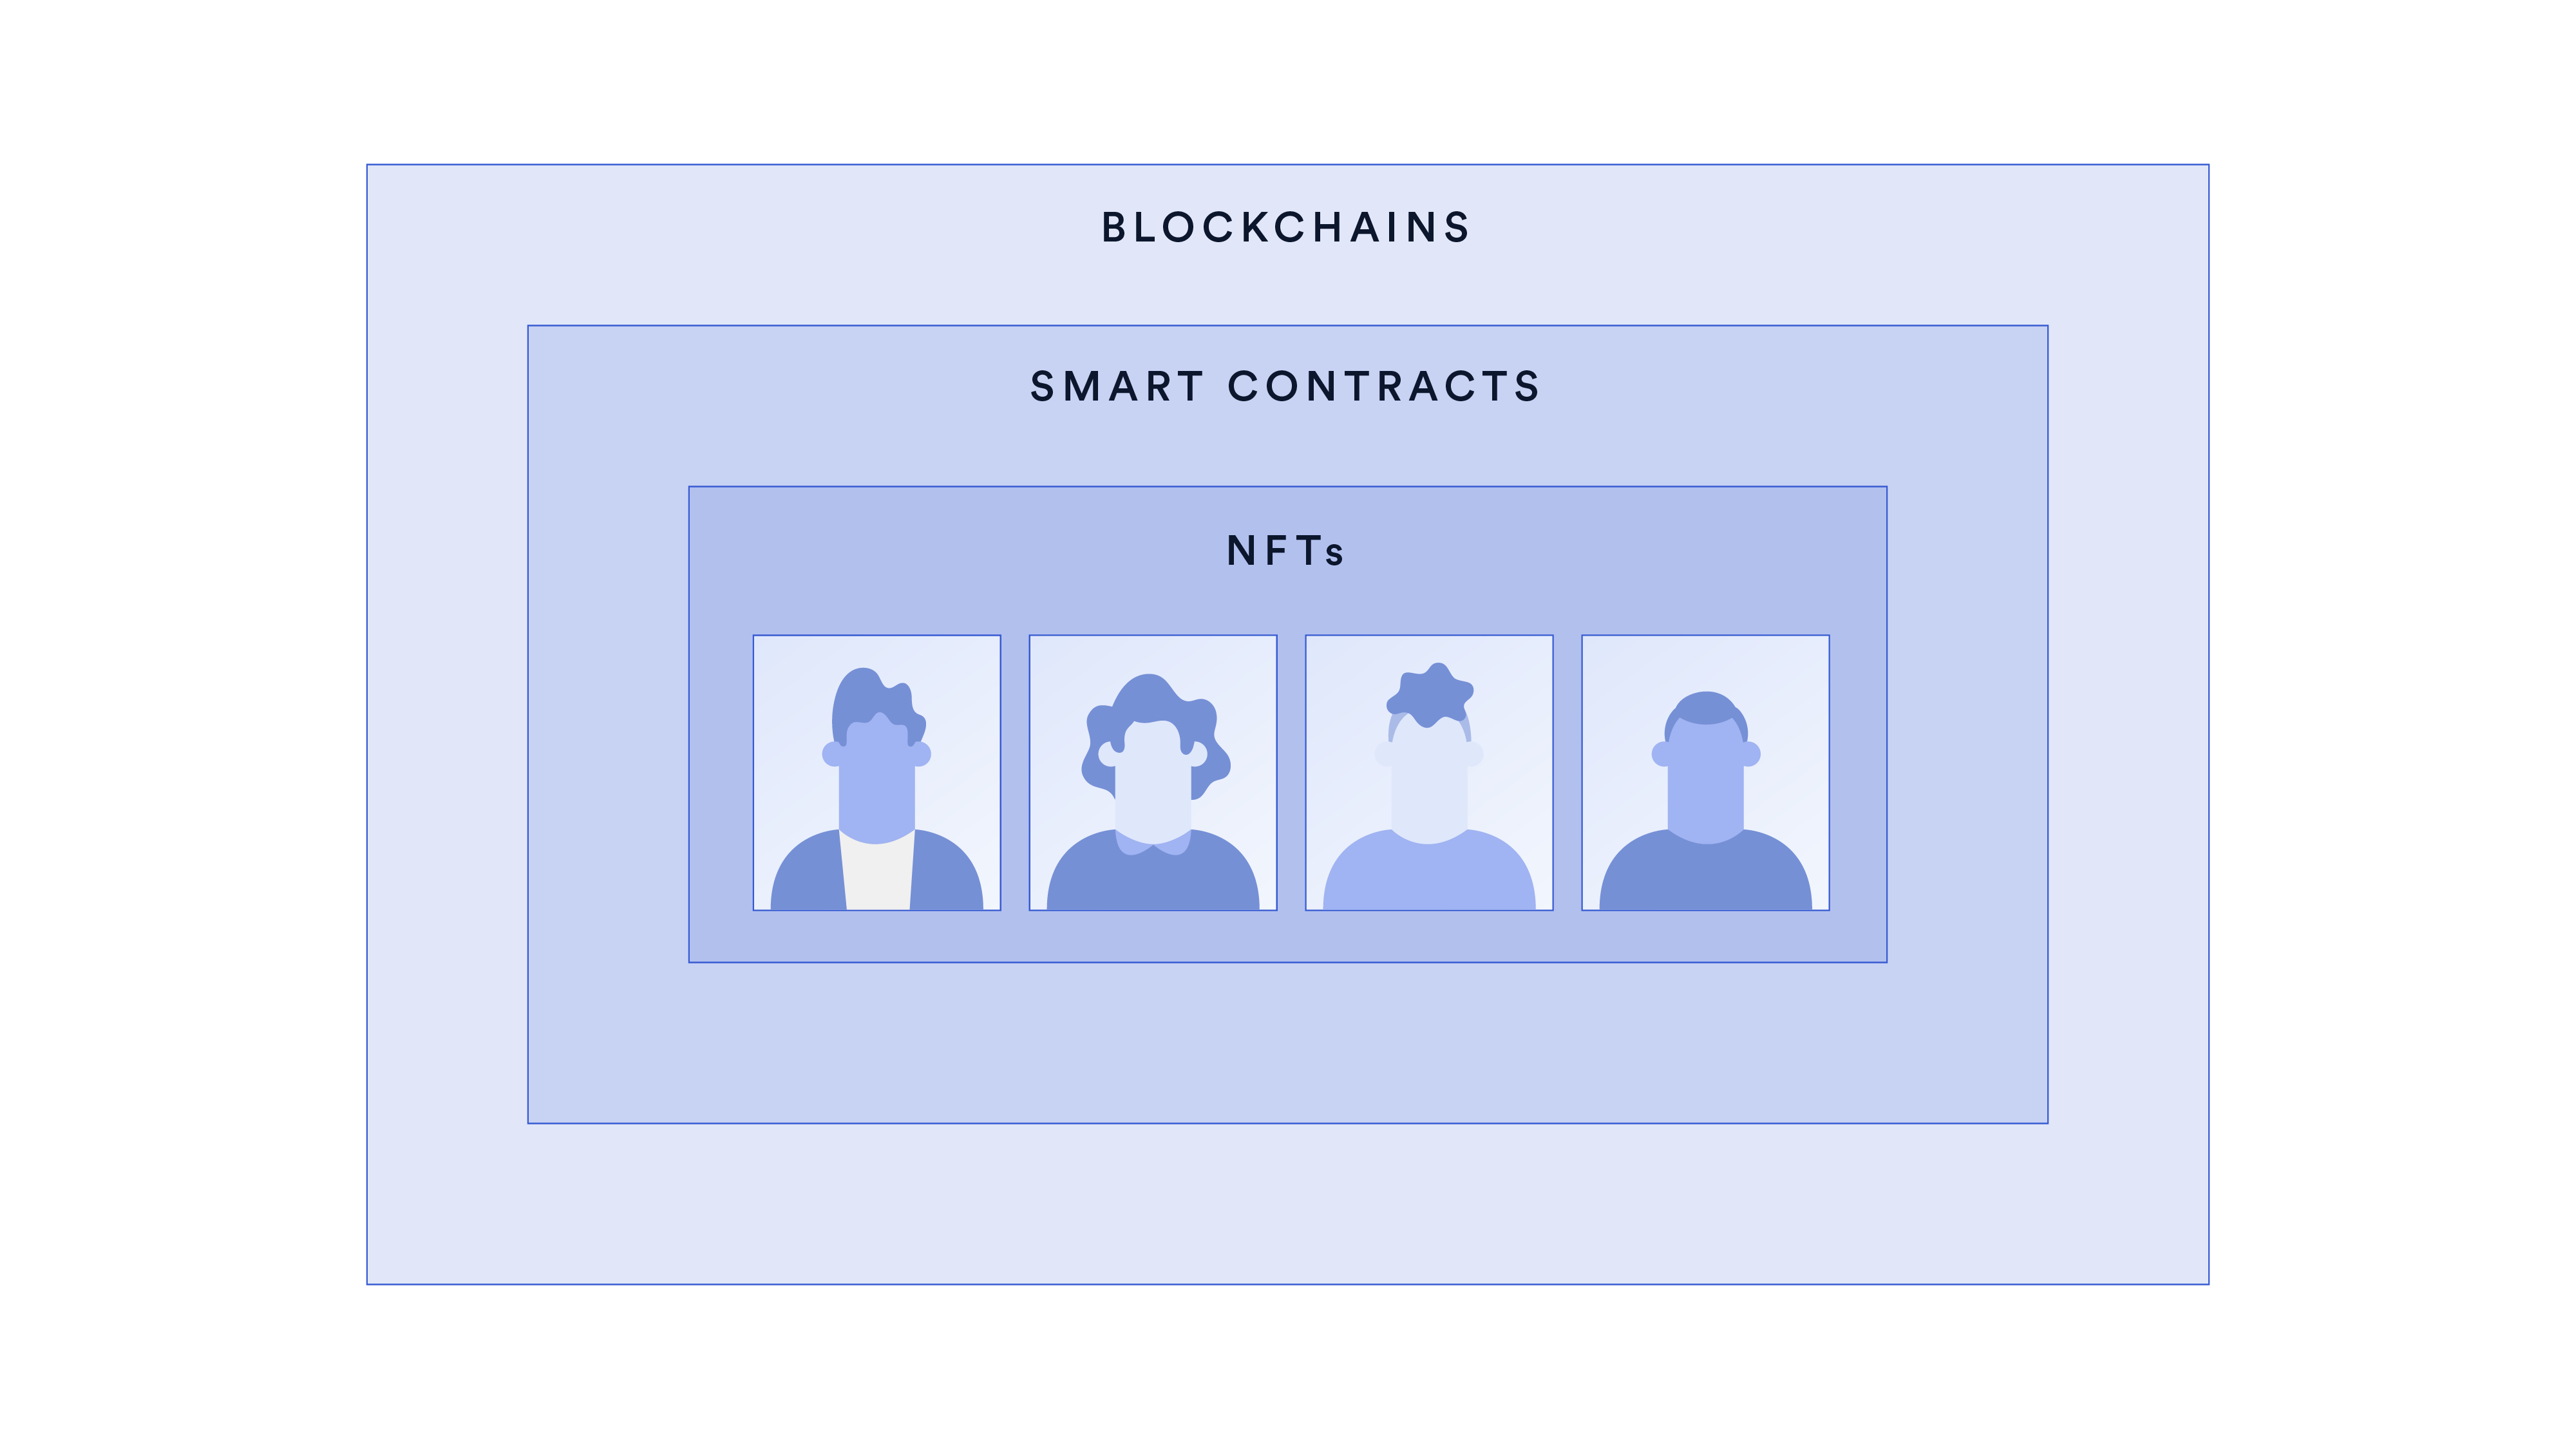 Sơ đồ hiển thị cấu trúc phân cấp từ NFT đến blockchain.